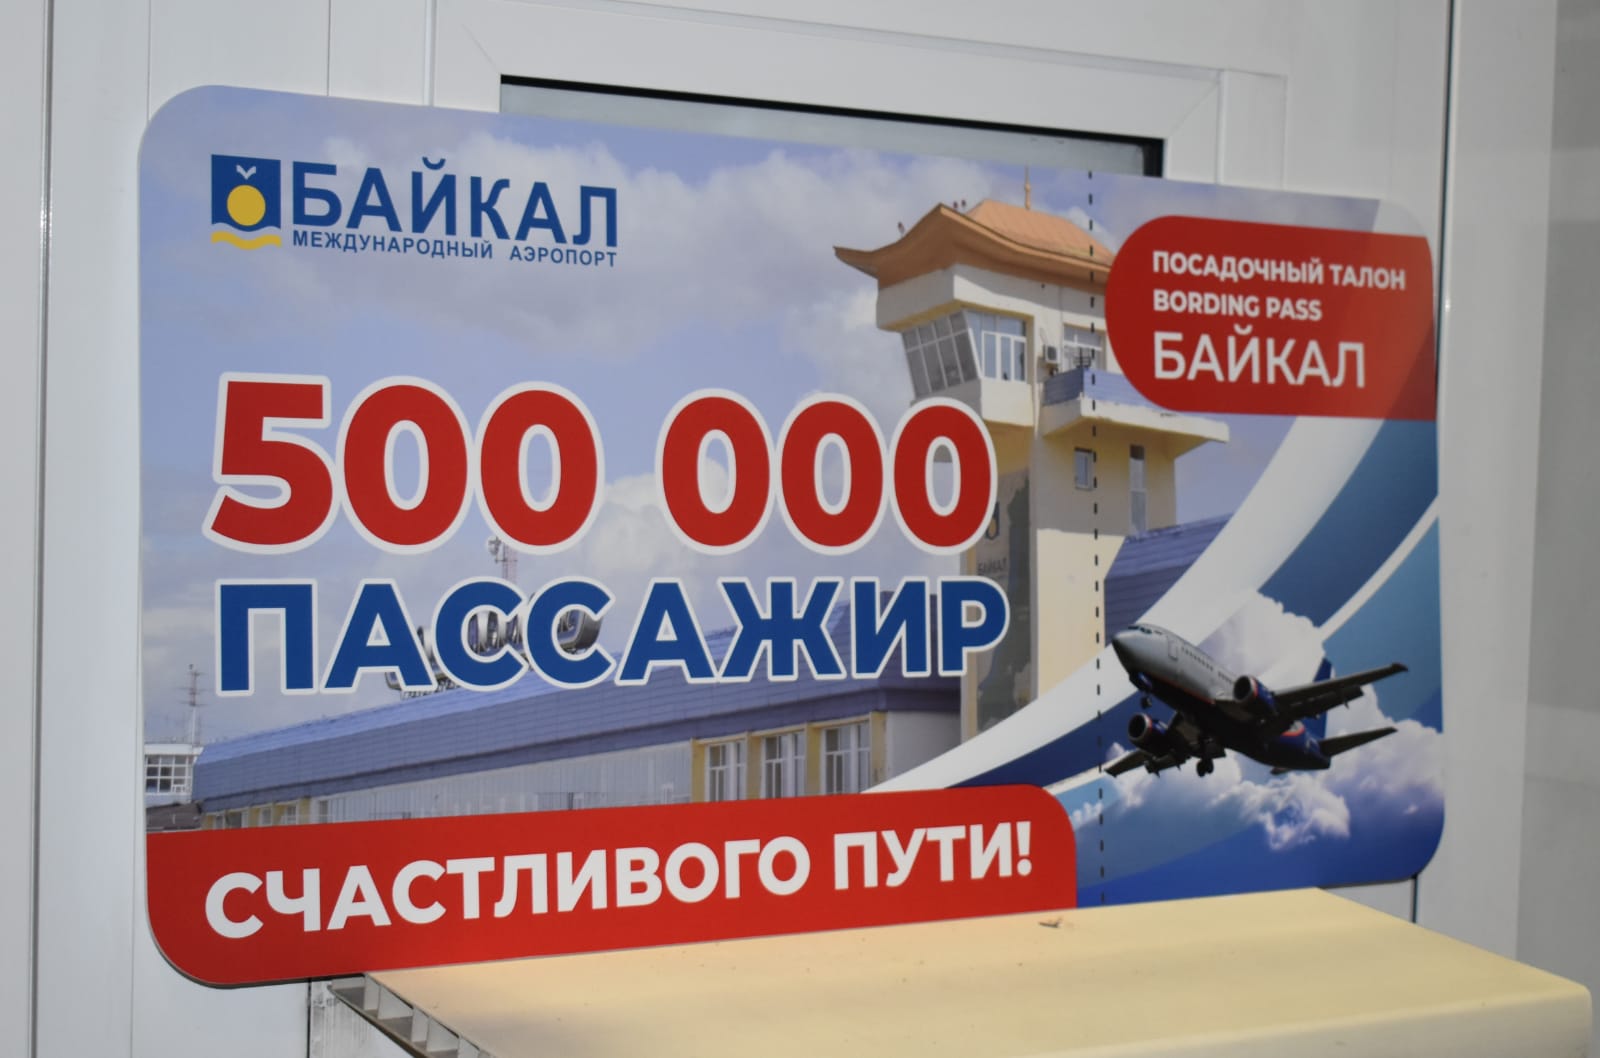 Аэропорт Байкал лого. Аэропорт Байкал Улан-Удэ логотип. Мозайка в аэропорту Байкал. Прилеты аэропорт байкал